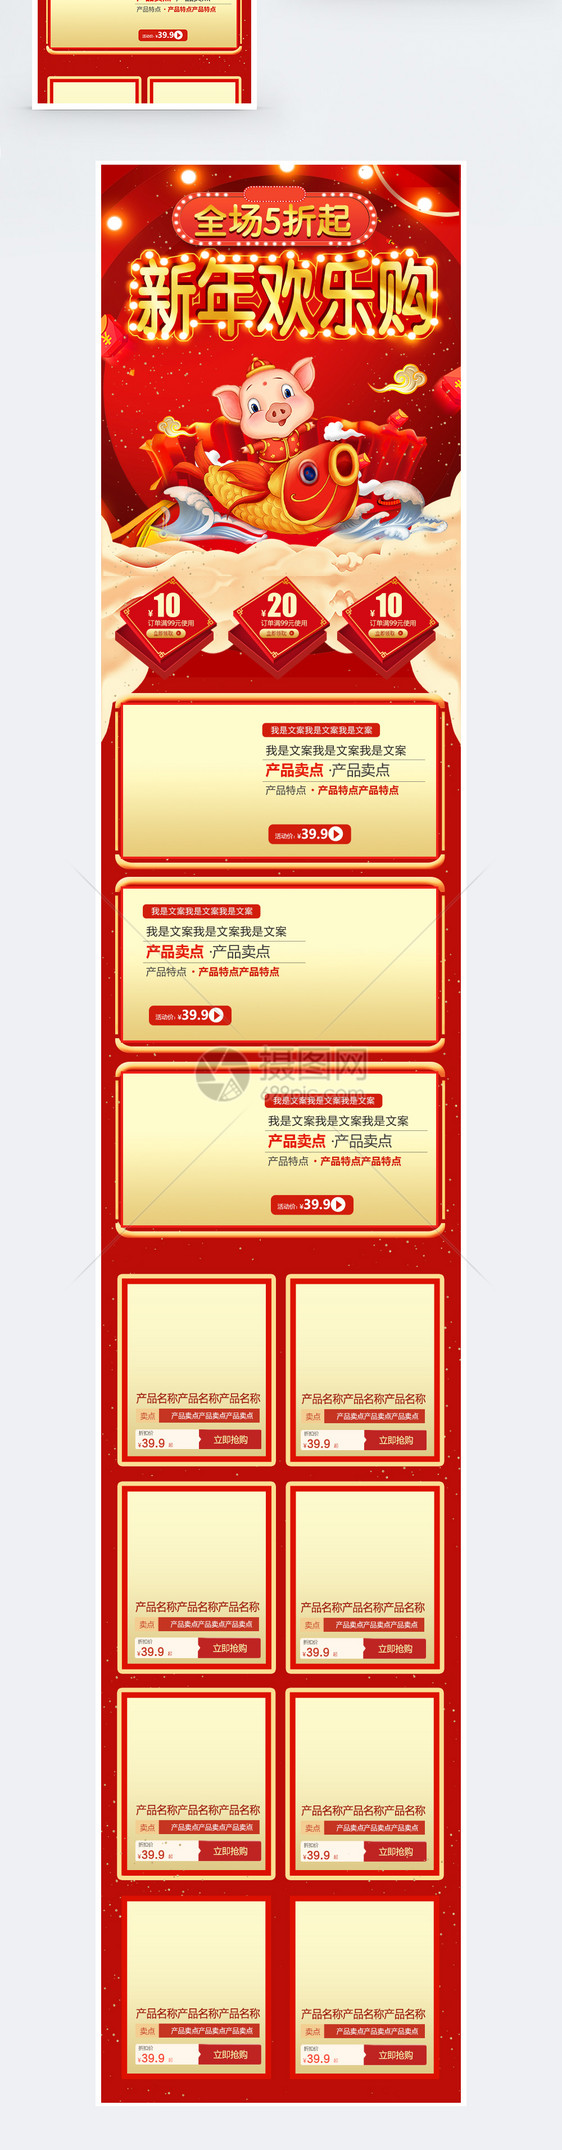 红色新年欢乐购促销淘宝手机端模板图片